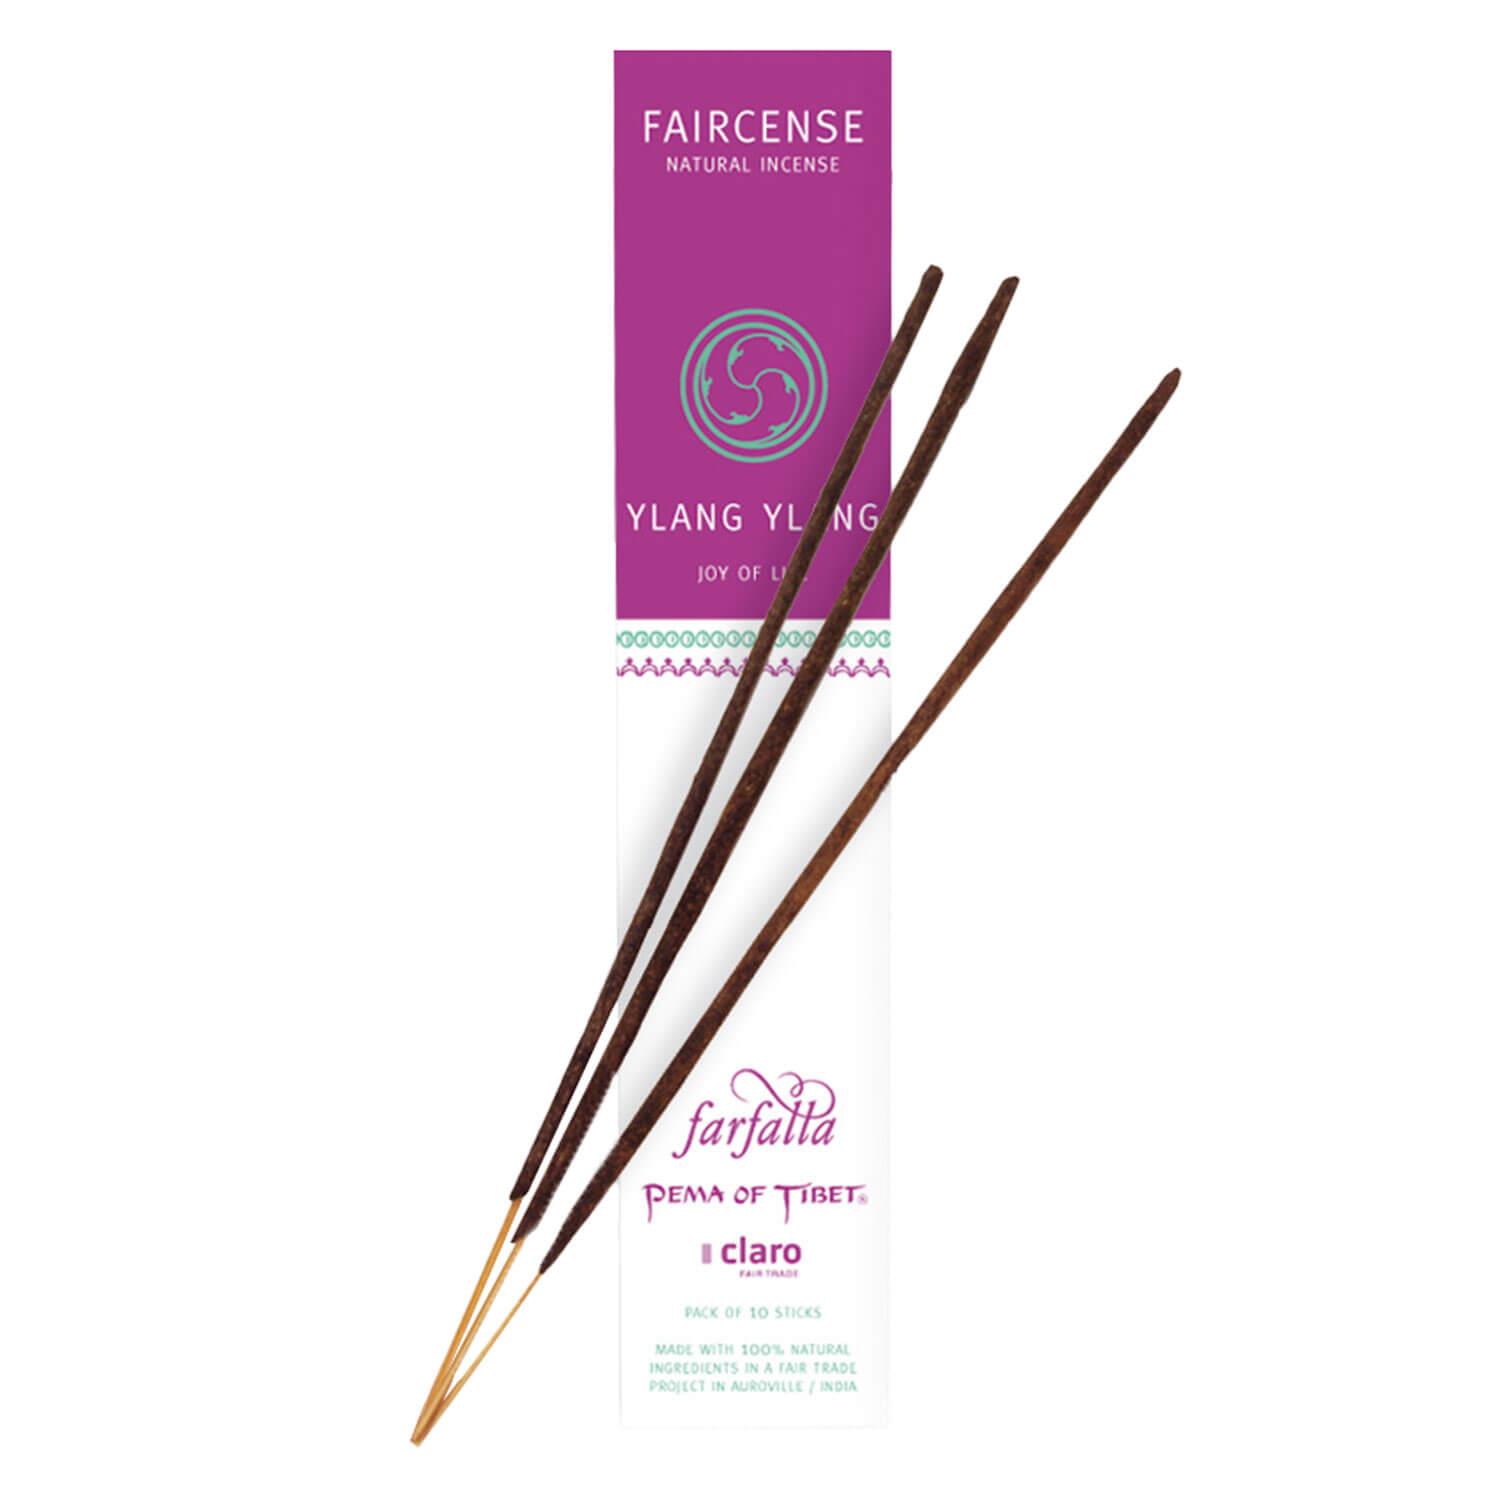 Farfalla Räucherstäbchen - Ylang Ylang/Joy of Life - Faircense Incense Sticks